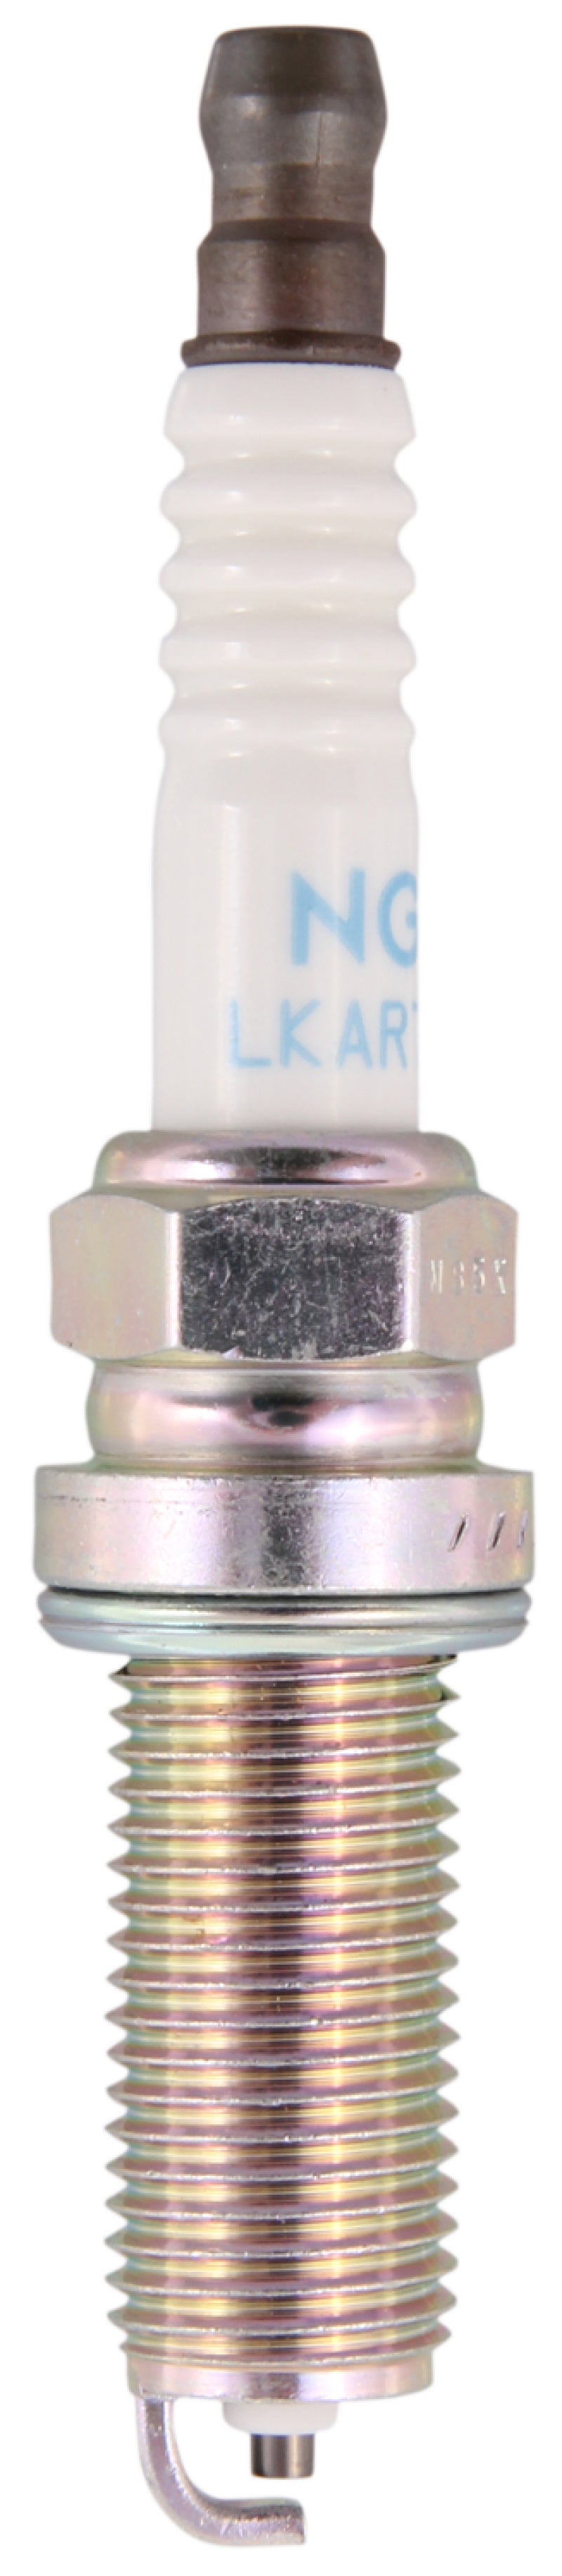 NGK Standard Spark Plug Box of 4 (LKAR7C-9).